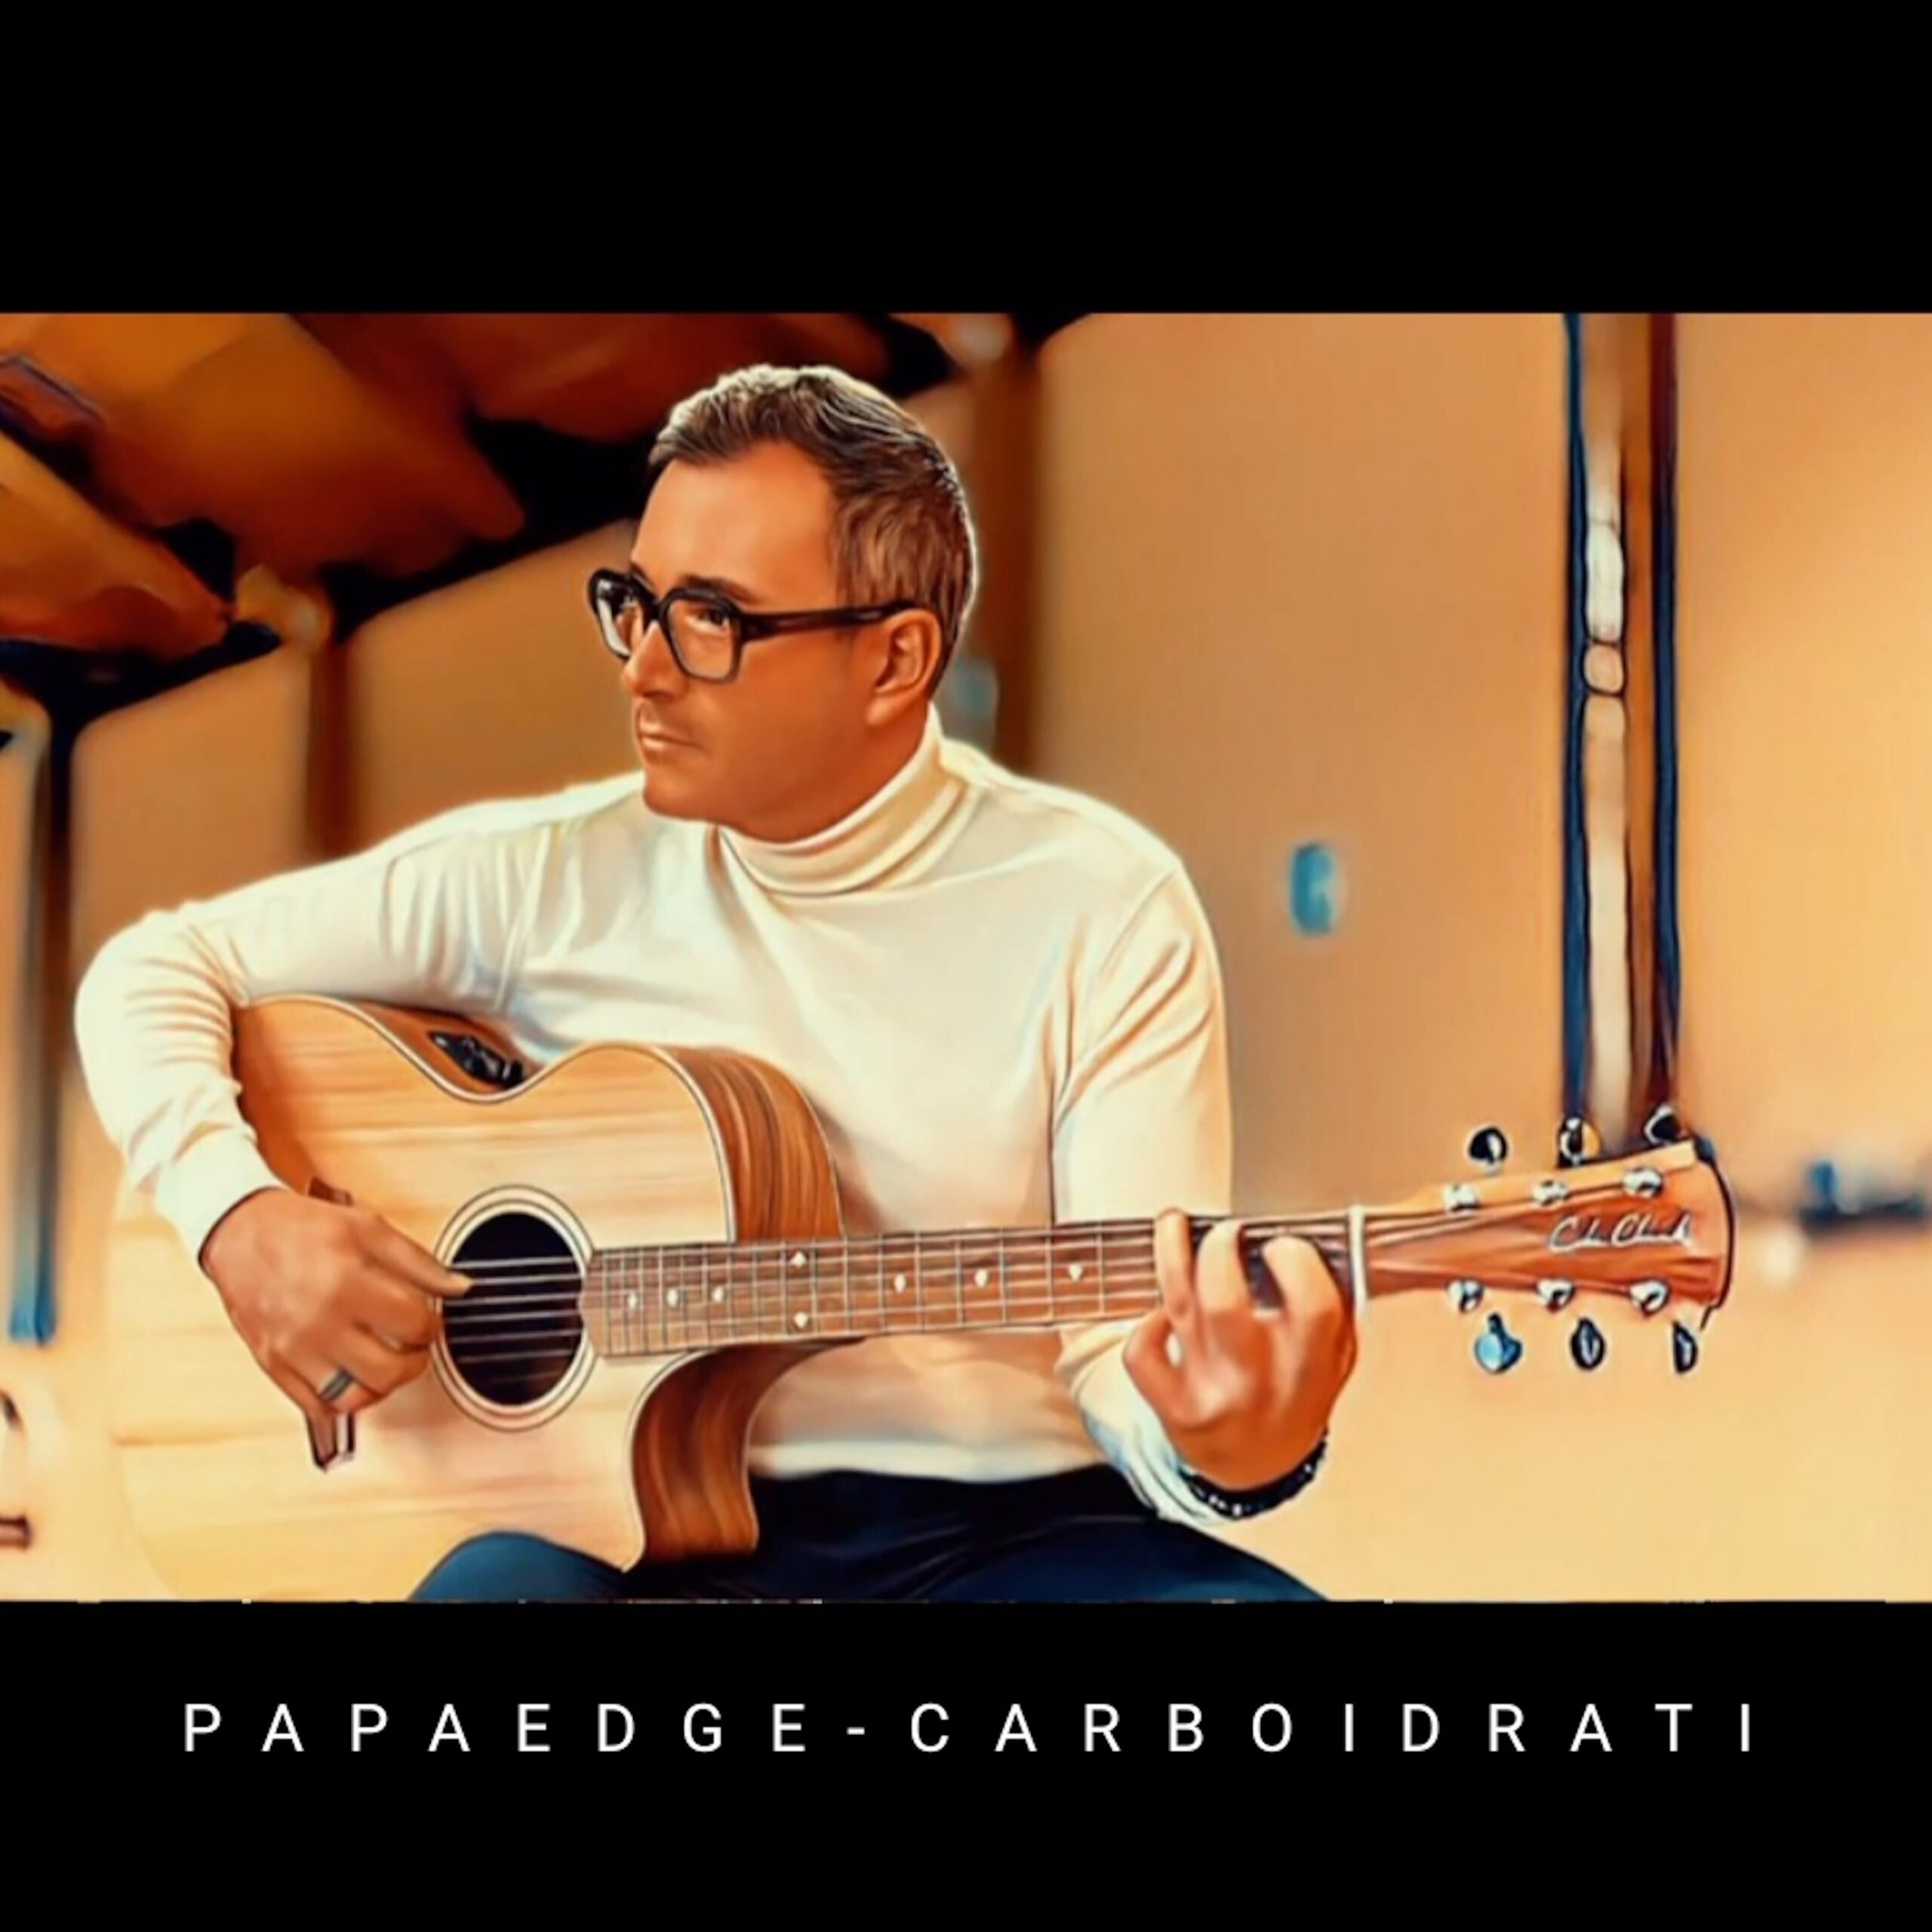 Papaedge pubblica il nuovo singolo “Carboidrati”